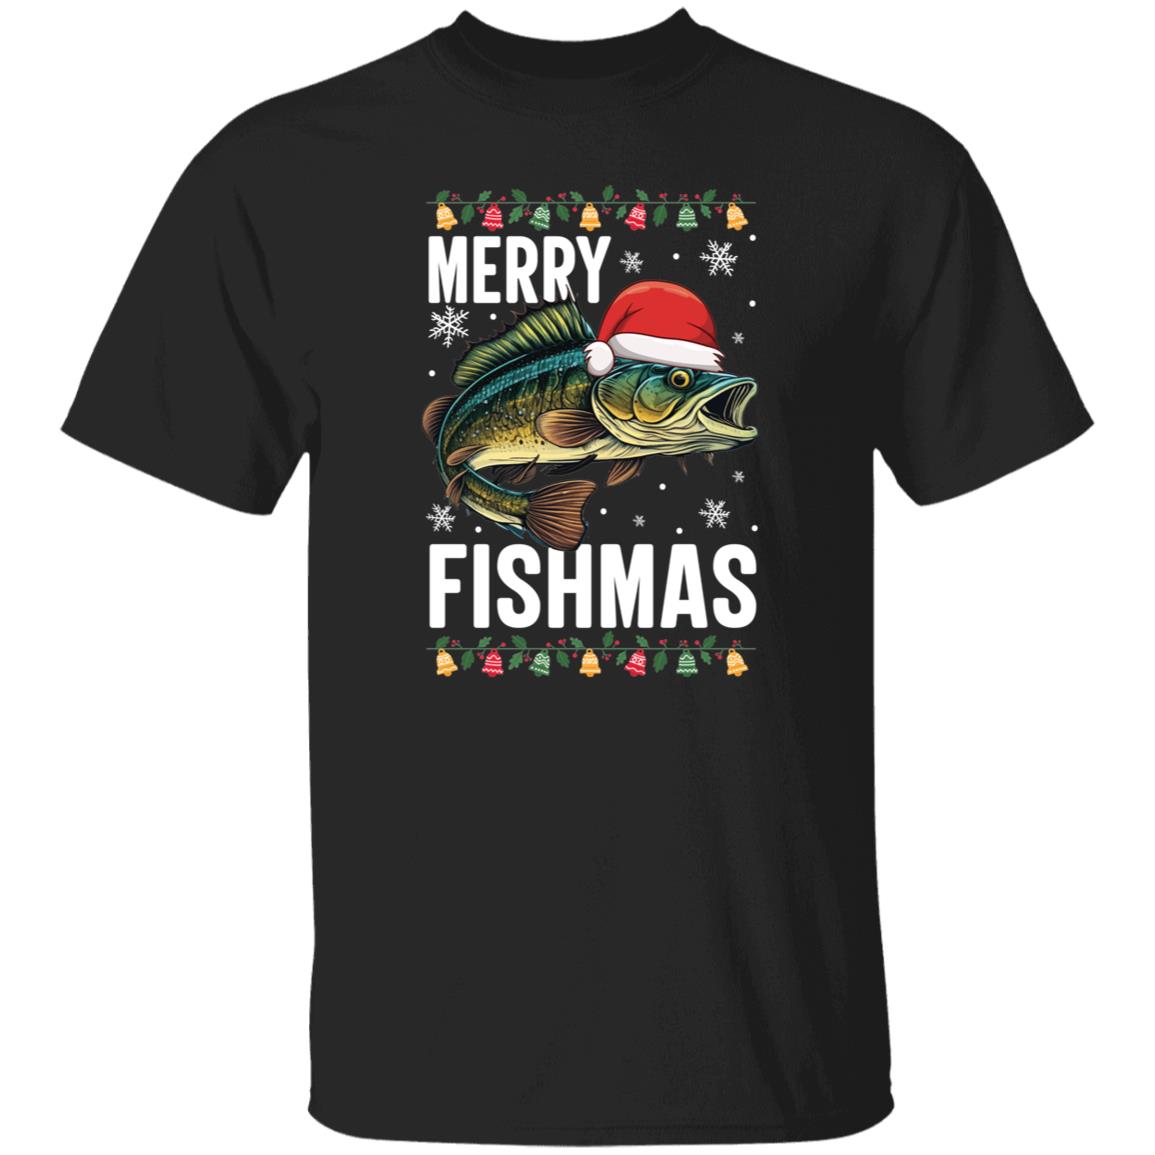 Merry Fishmas Funny Ugly Christmas Gift